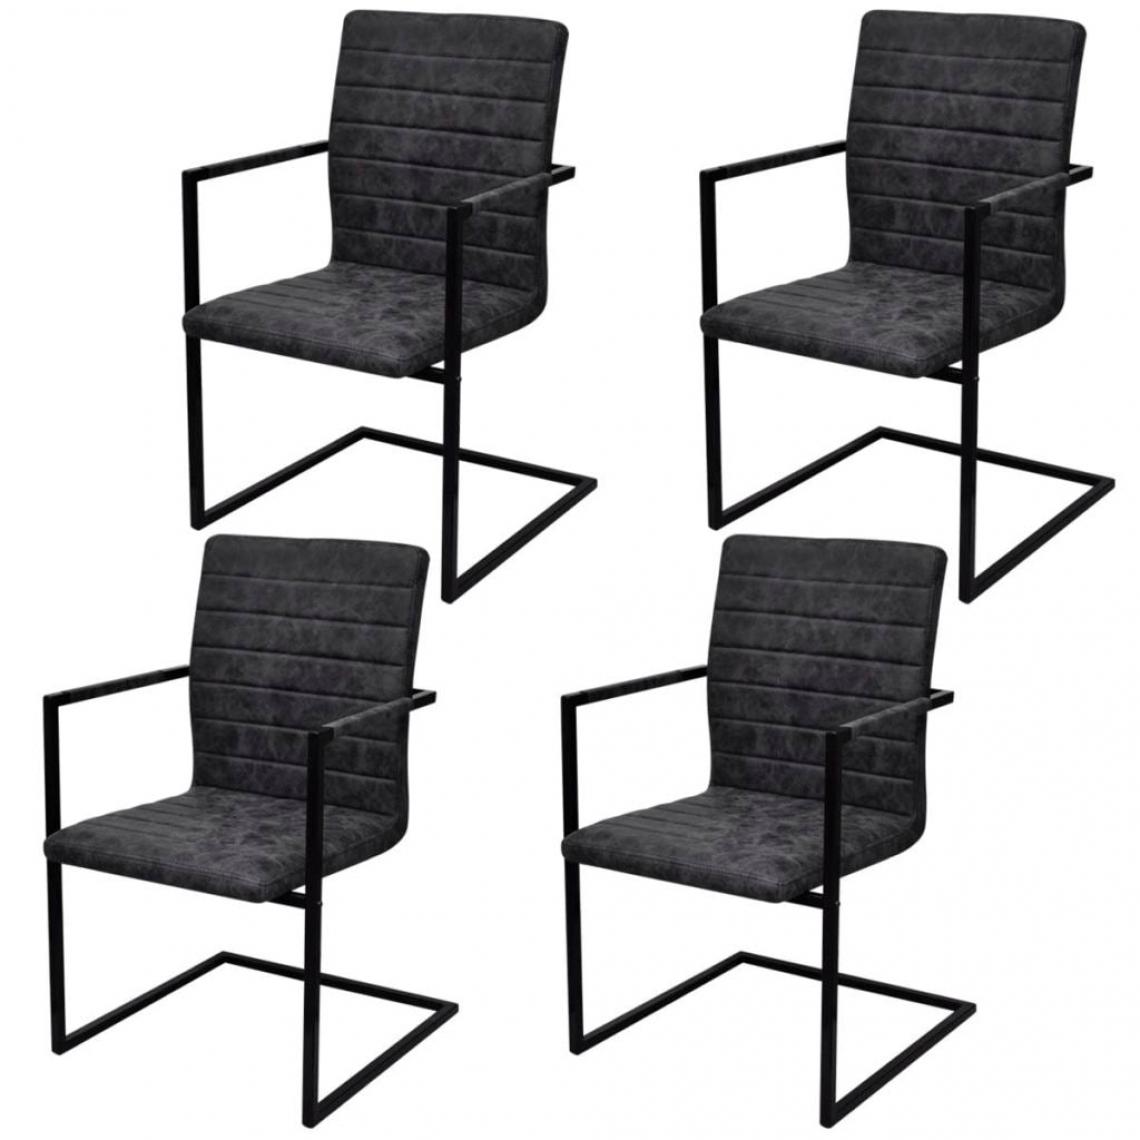 Decoshop26 - Lot de 4 chaises de salle à manger cuisine cantilever design moderne similicuir noir CDS021419 - Chaises